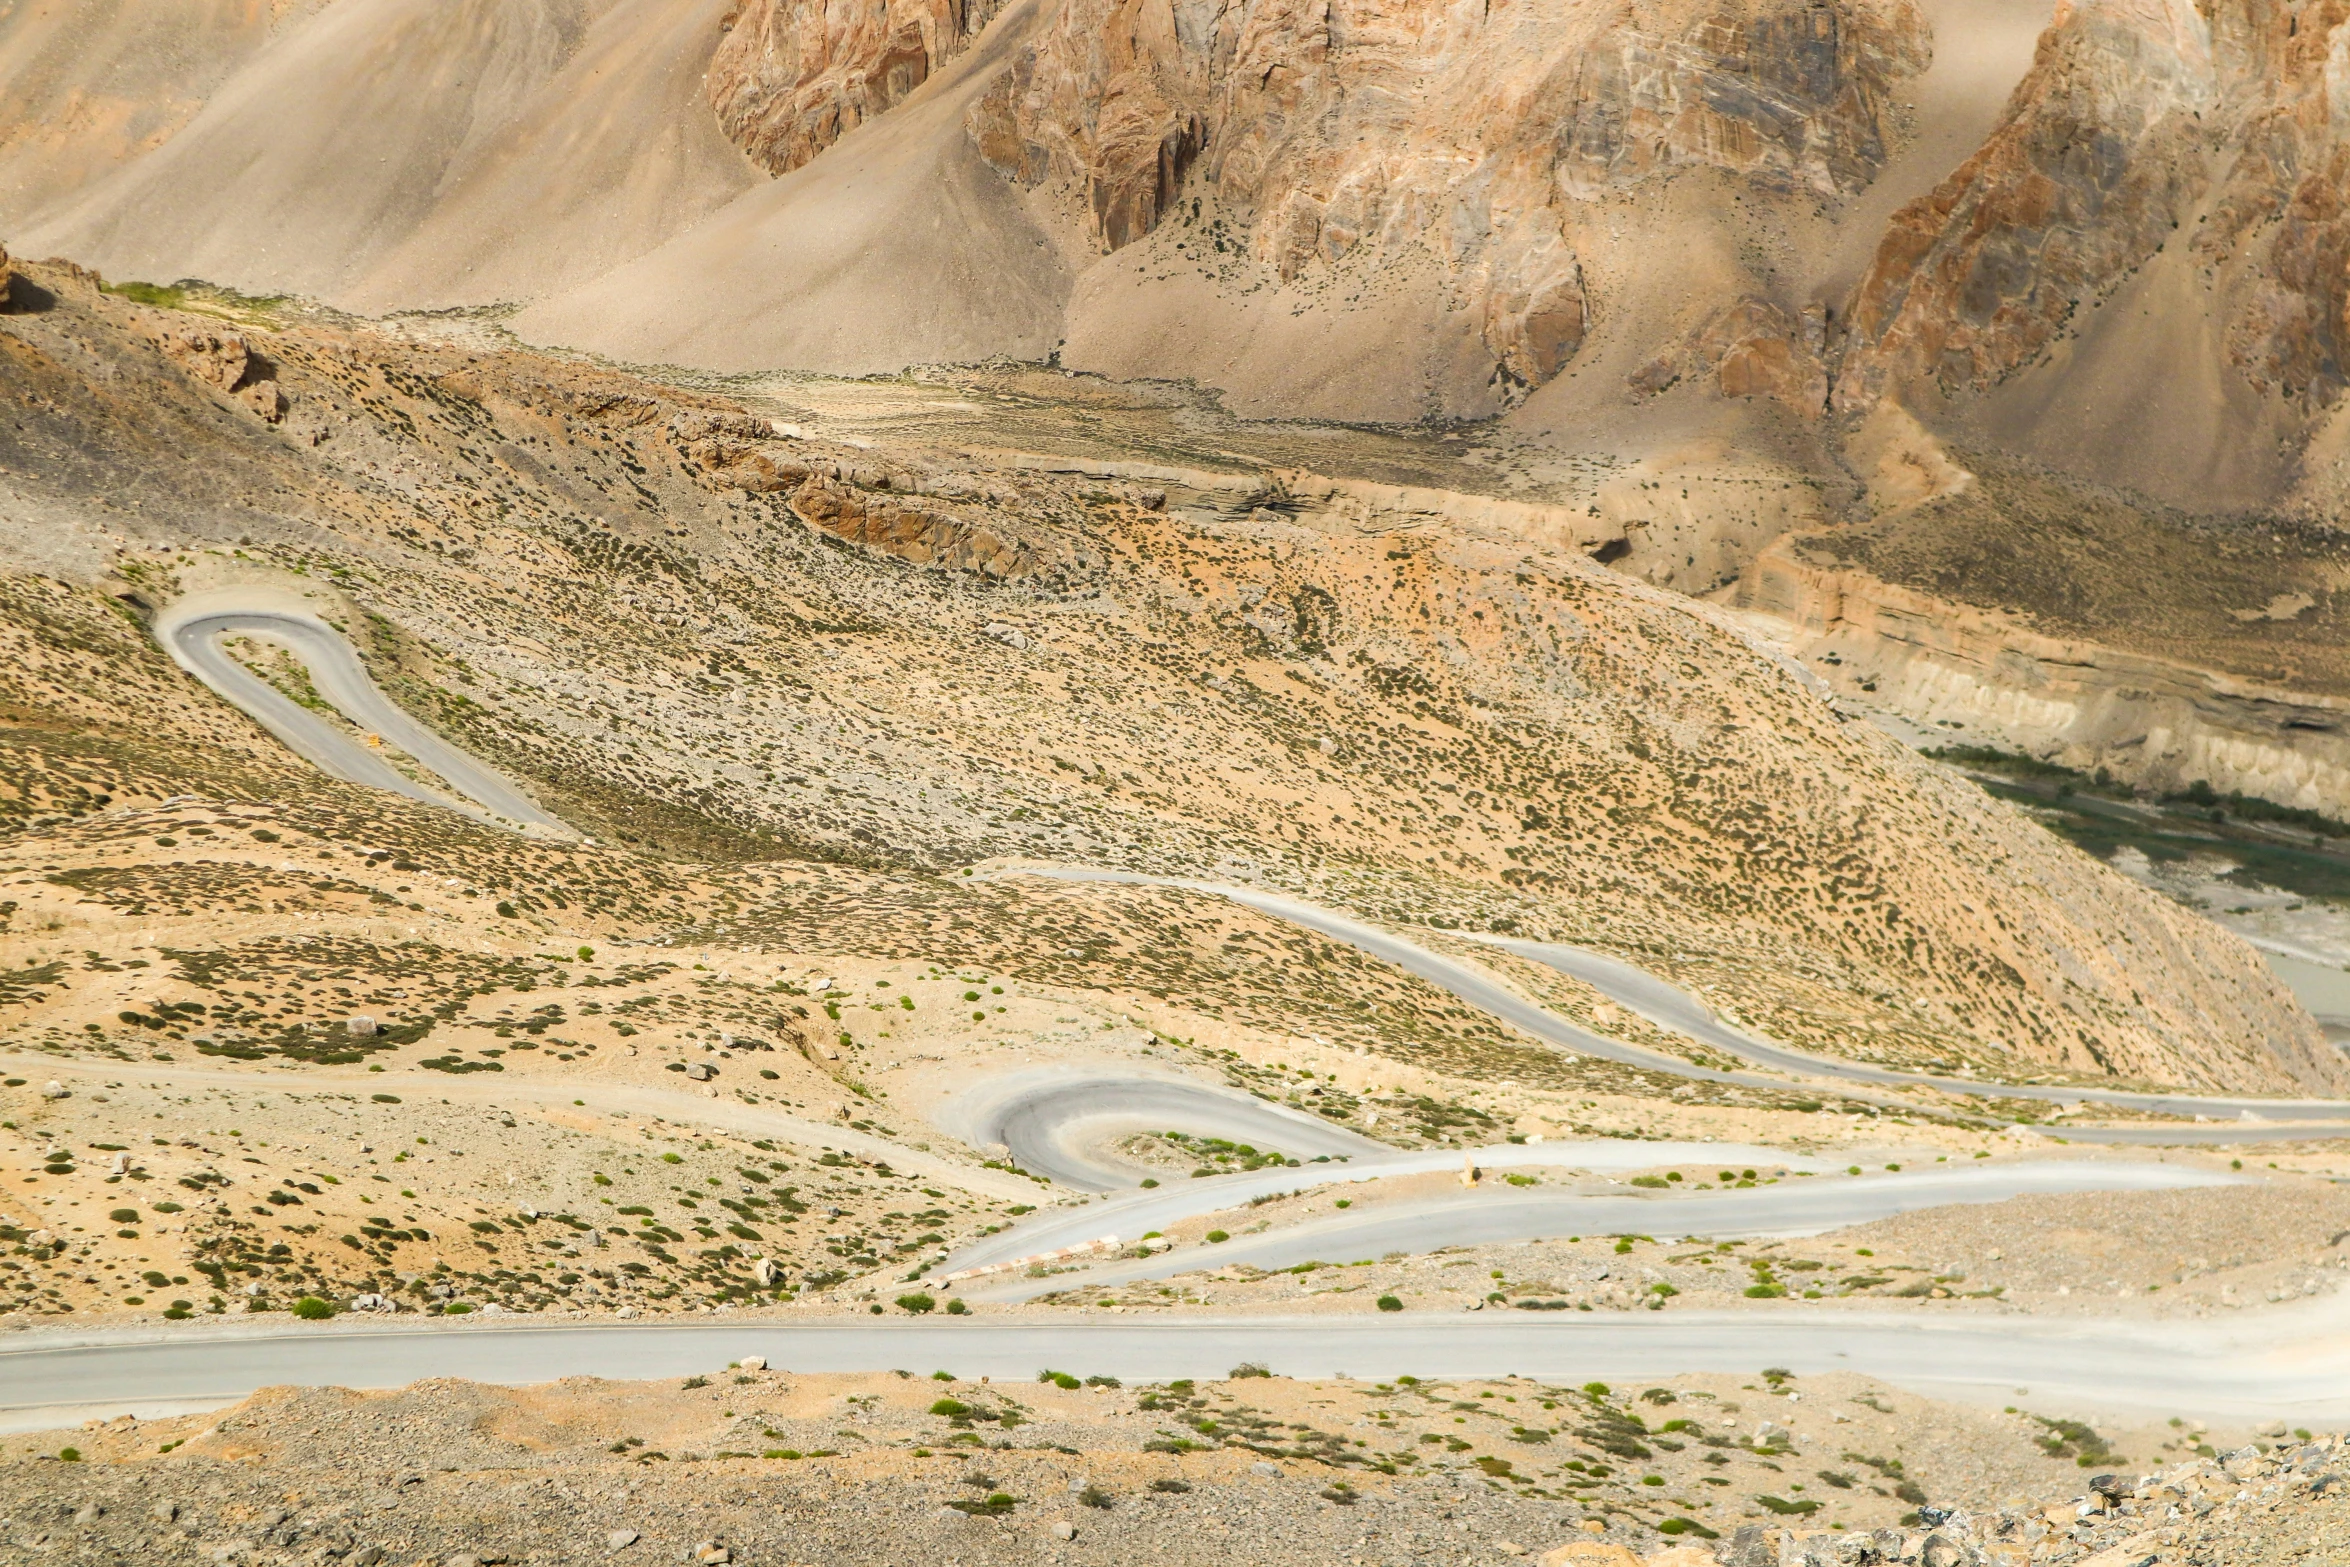 a winding dirt road through a hilly desert landscape